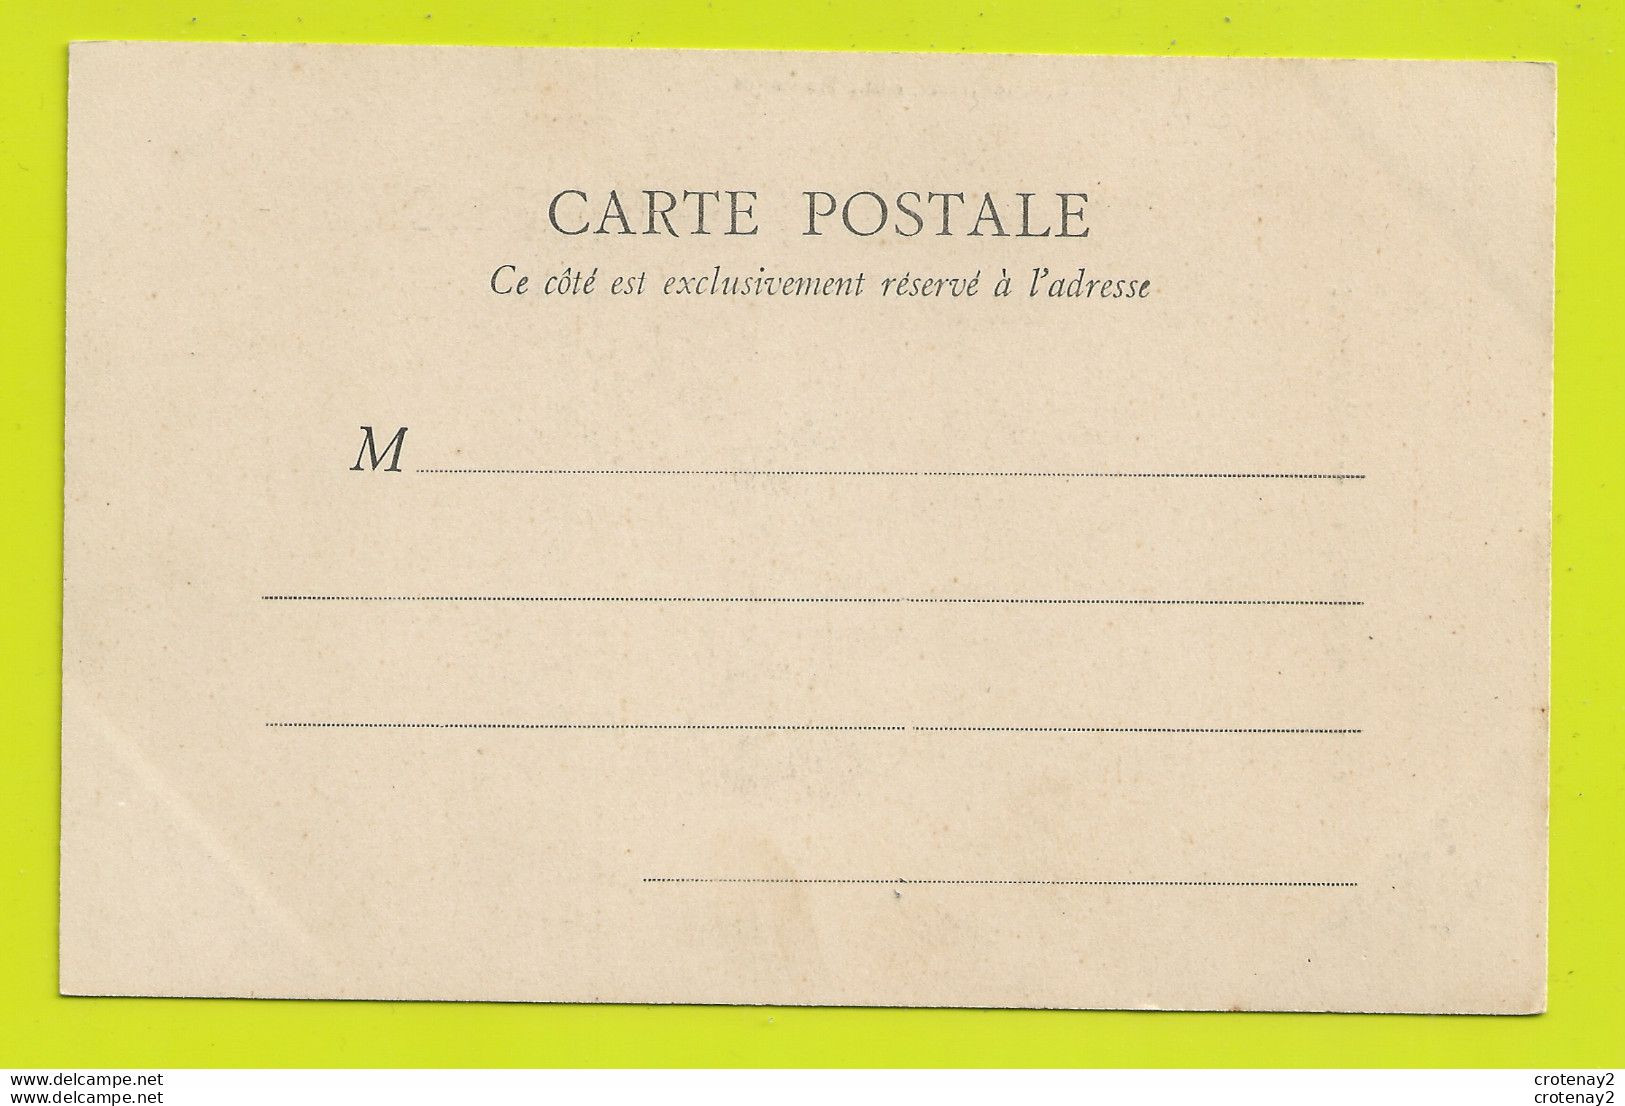 45 MONTARGIS La Poterne Du Château Brouette Avant 1905 TBE VOIR DOS Non Séparé - Montargis